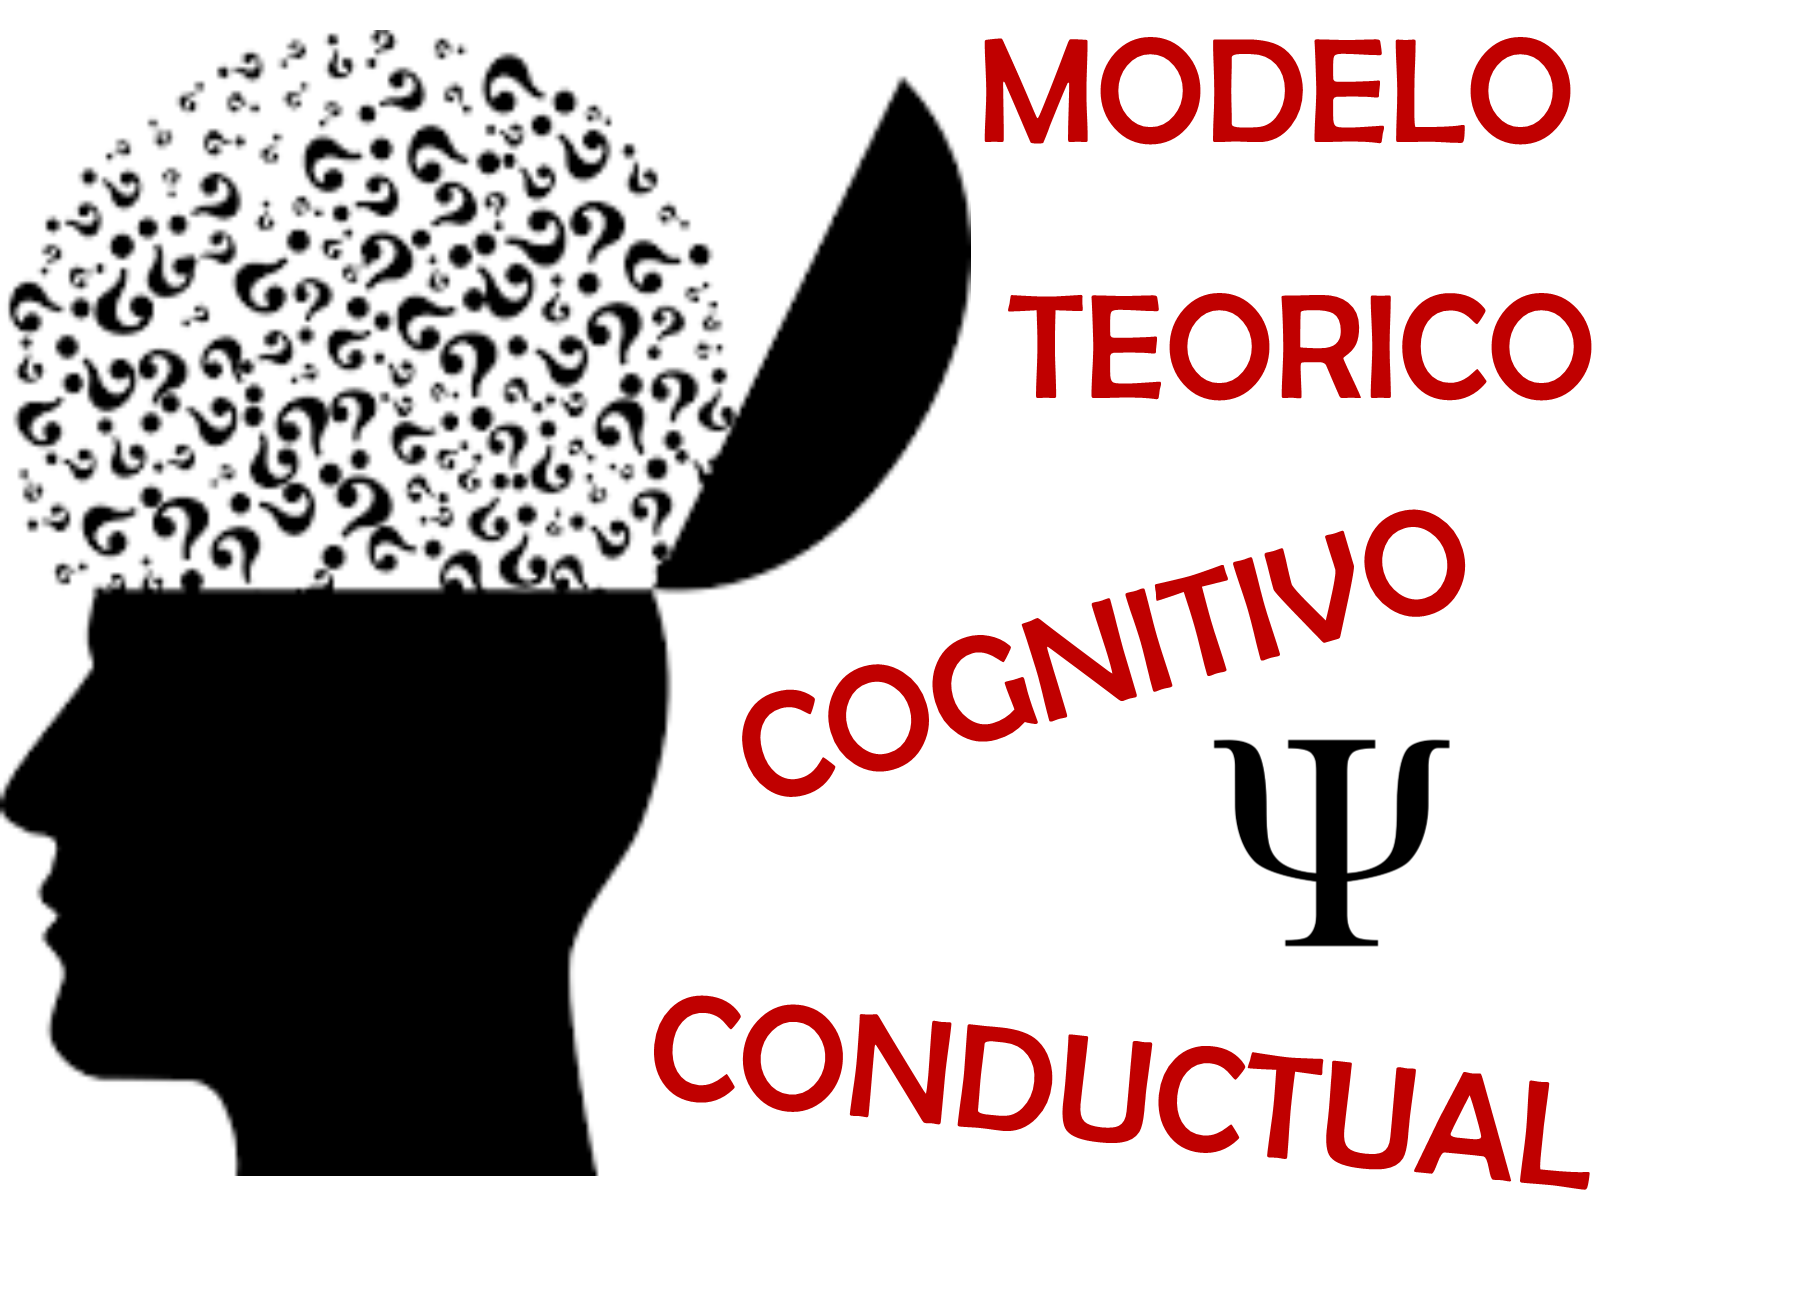 Summary of Modelo Teórico Cognitivo - Conductual (Alexia Daniela Carrillo  Barron 01*LPSI)